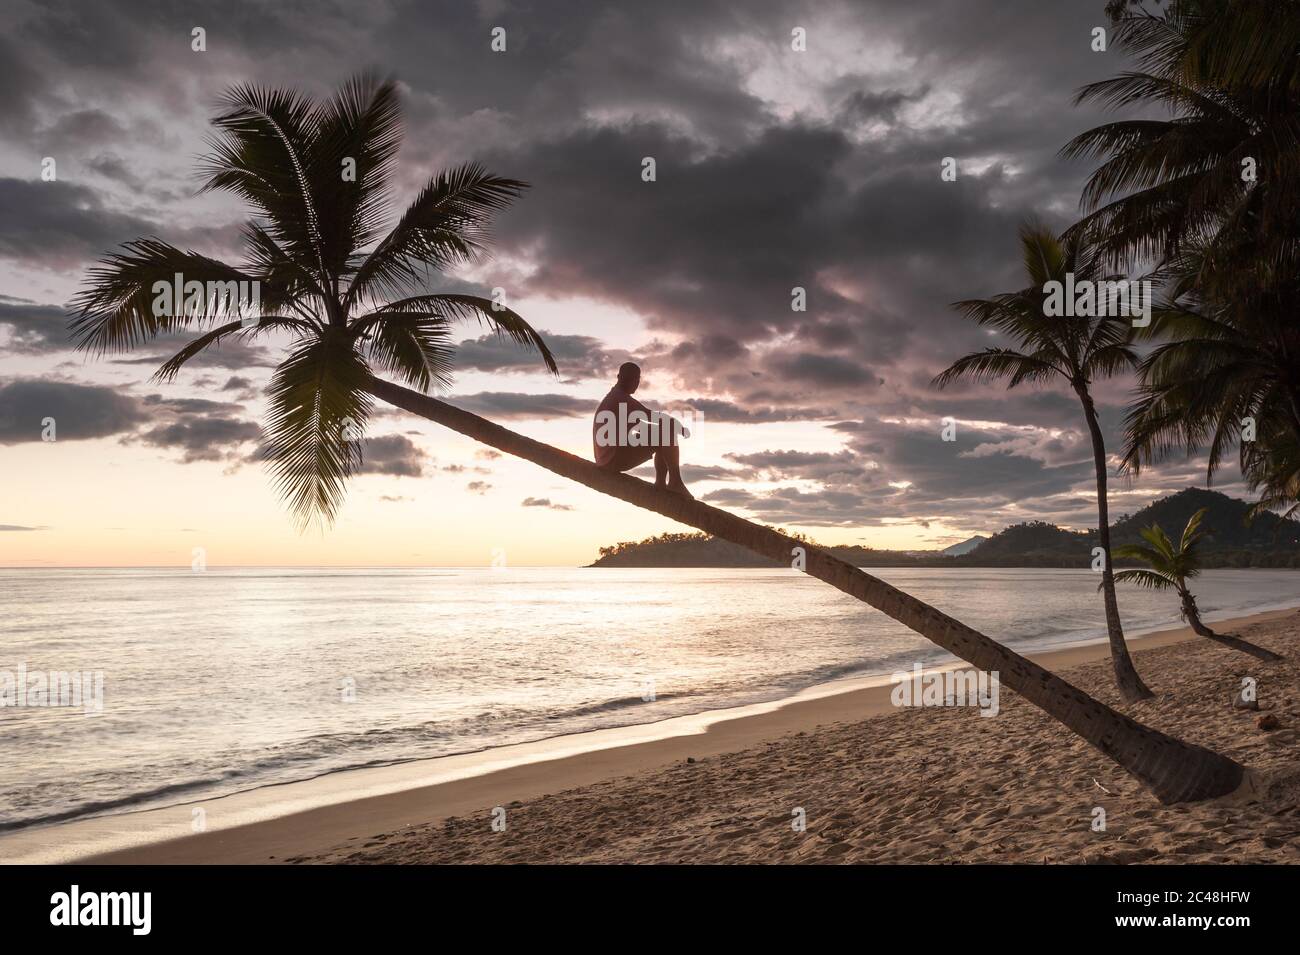 Un beachcomber descansa por un momento para disfrutar del espectacular amanecer desde un maravilloso mirador en lo alto de una palma de coco en Clifton Beach, Queensland. Foto de stock